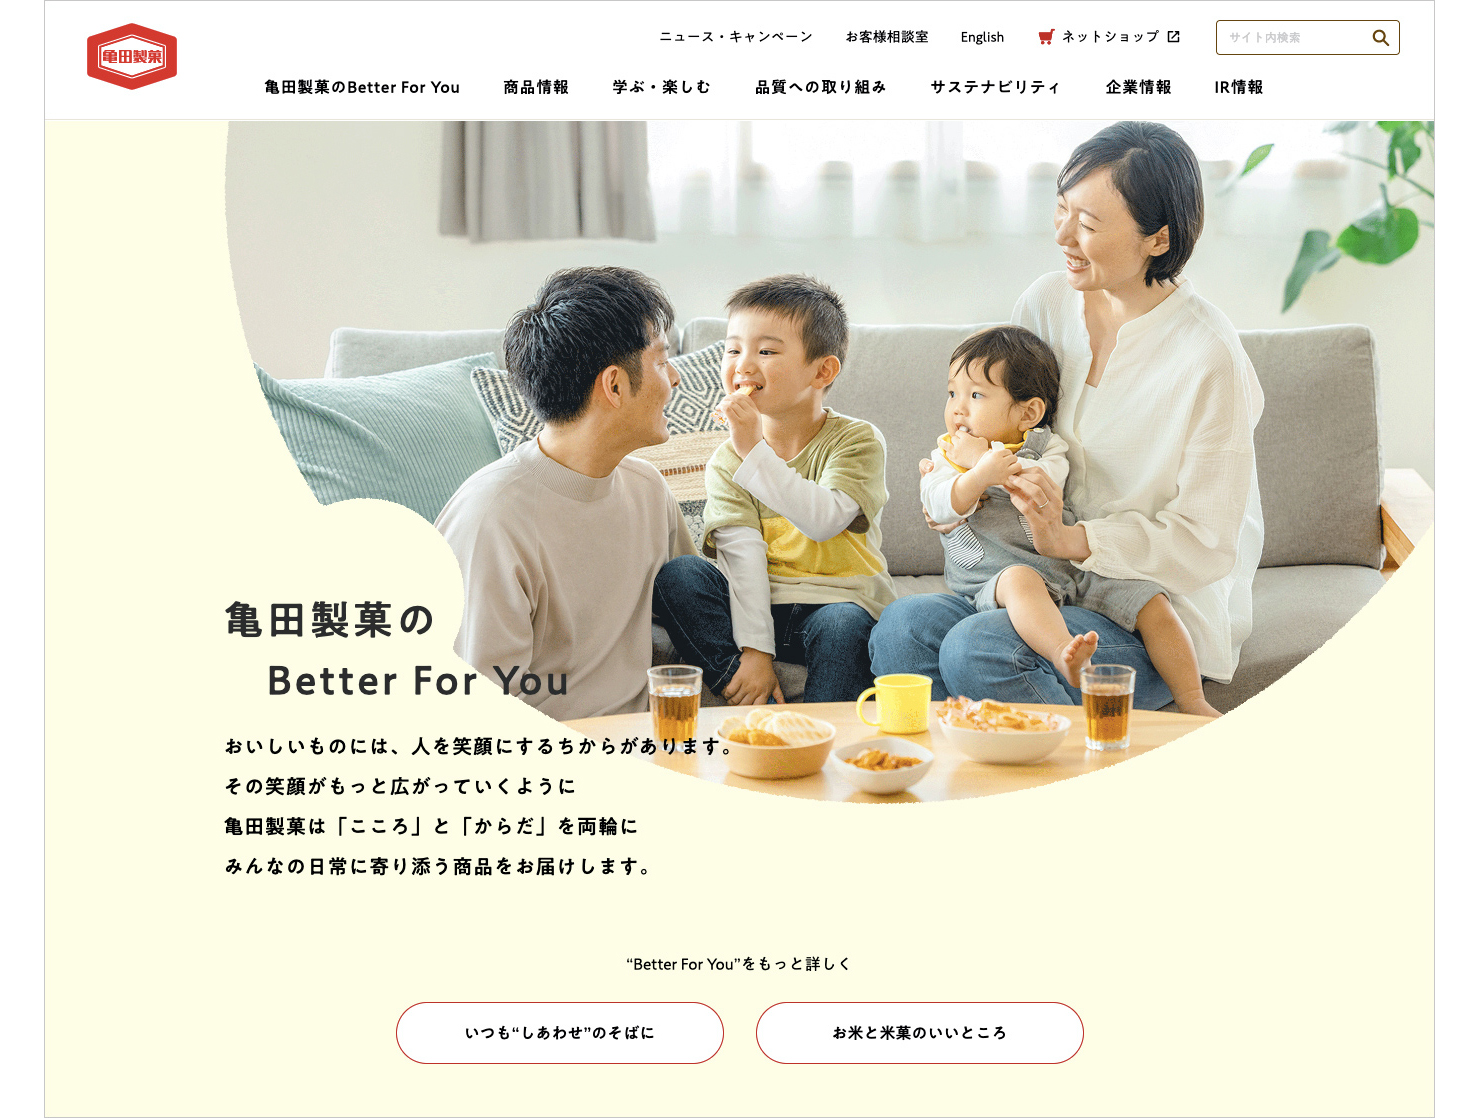 サイトキャプチャ：サイトトップのメインビジュアル。家族でお菓子を食べている写真と、亀田製菓のBetter For Youのメッセージ。